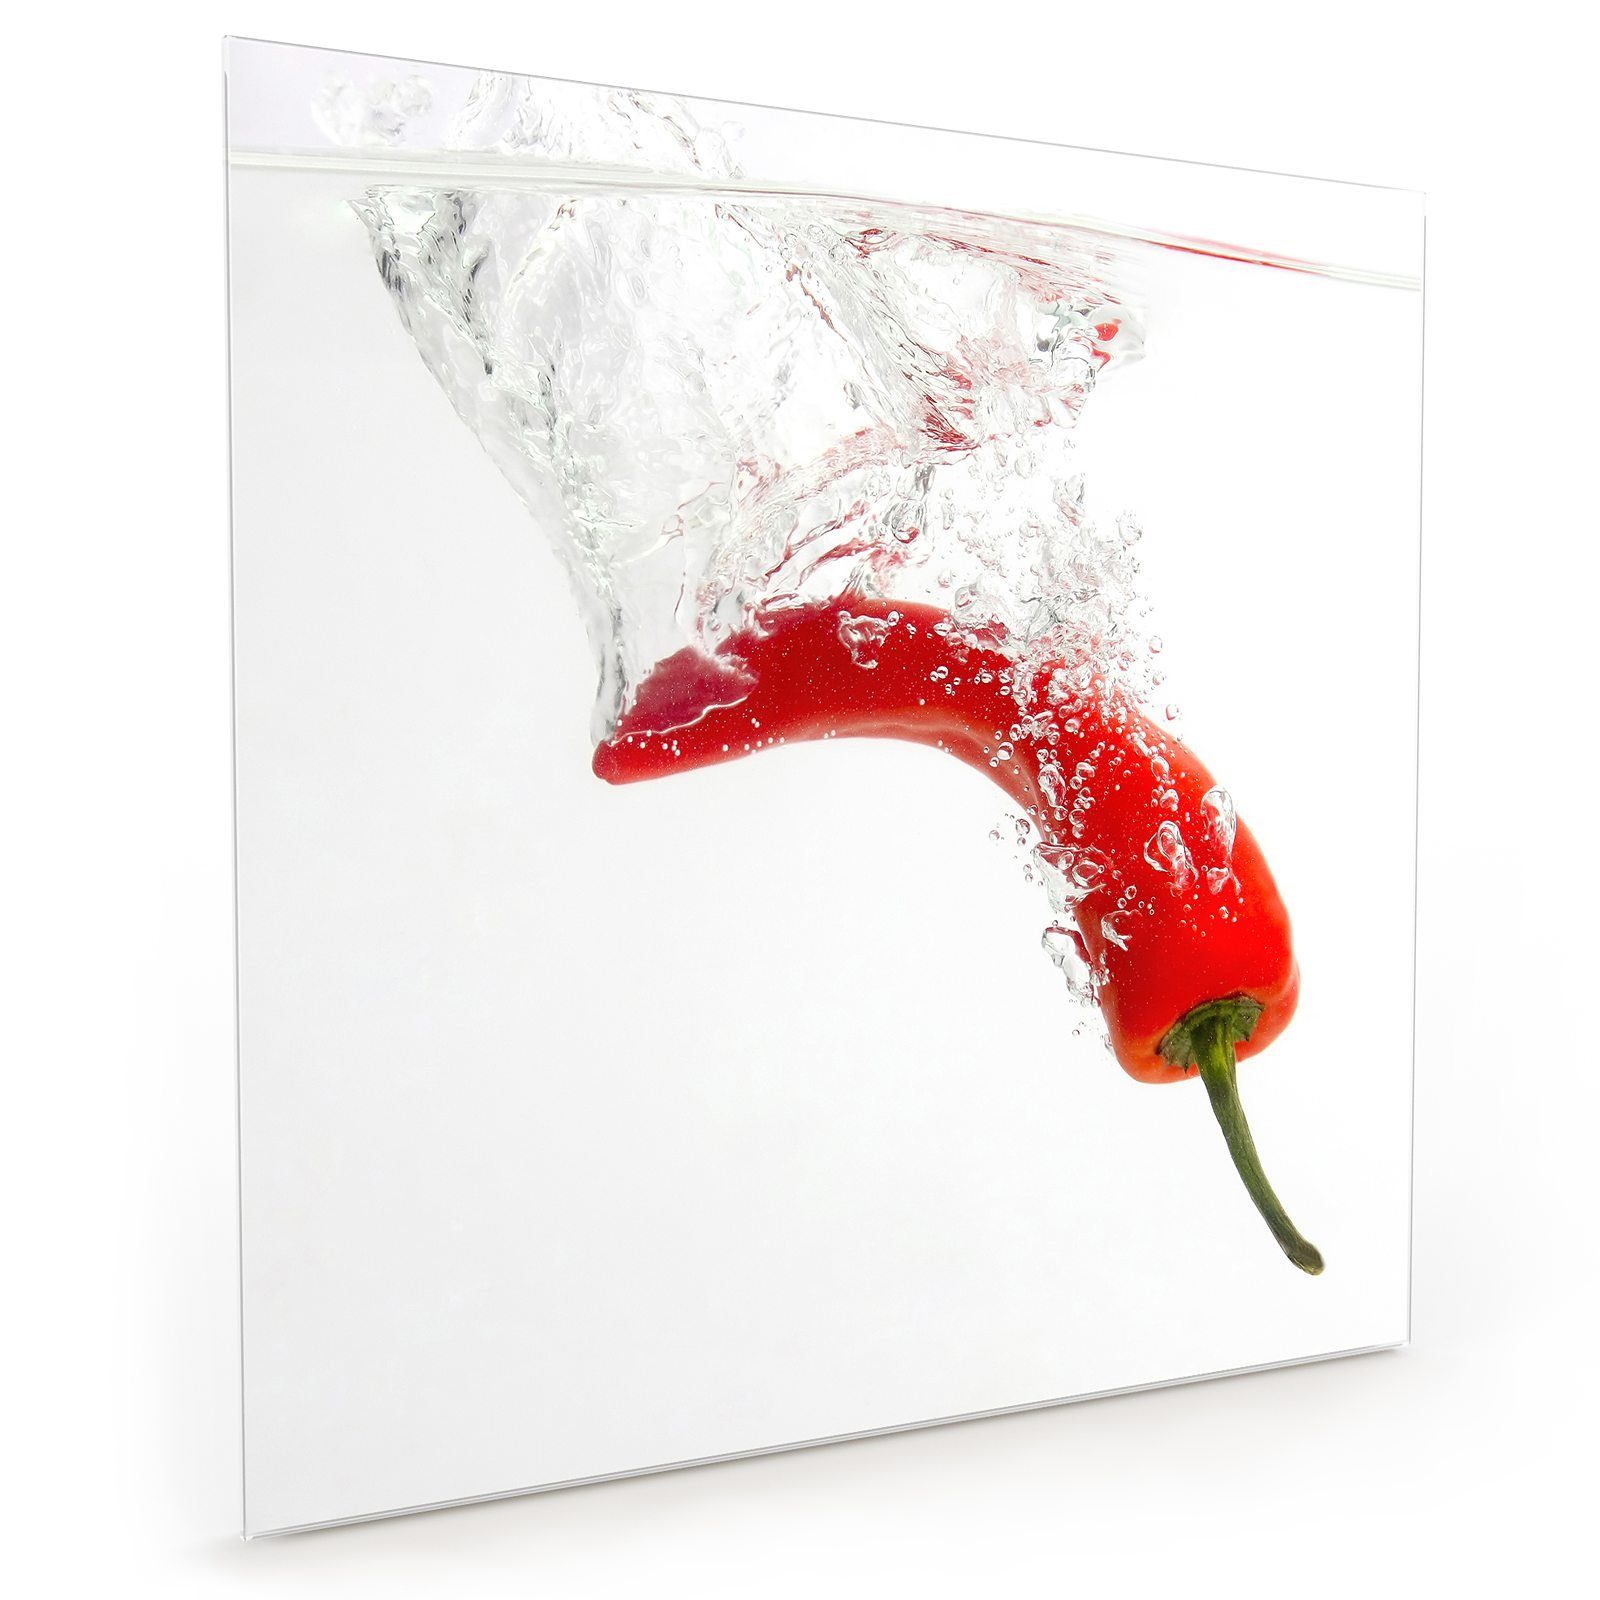 Primedeco Küchenrückwand Küchenrückwand Spritzschutz Glas mit Motiv Chili fällt in Wasser